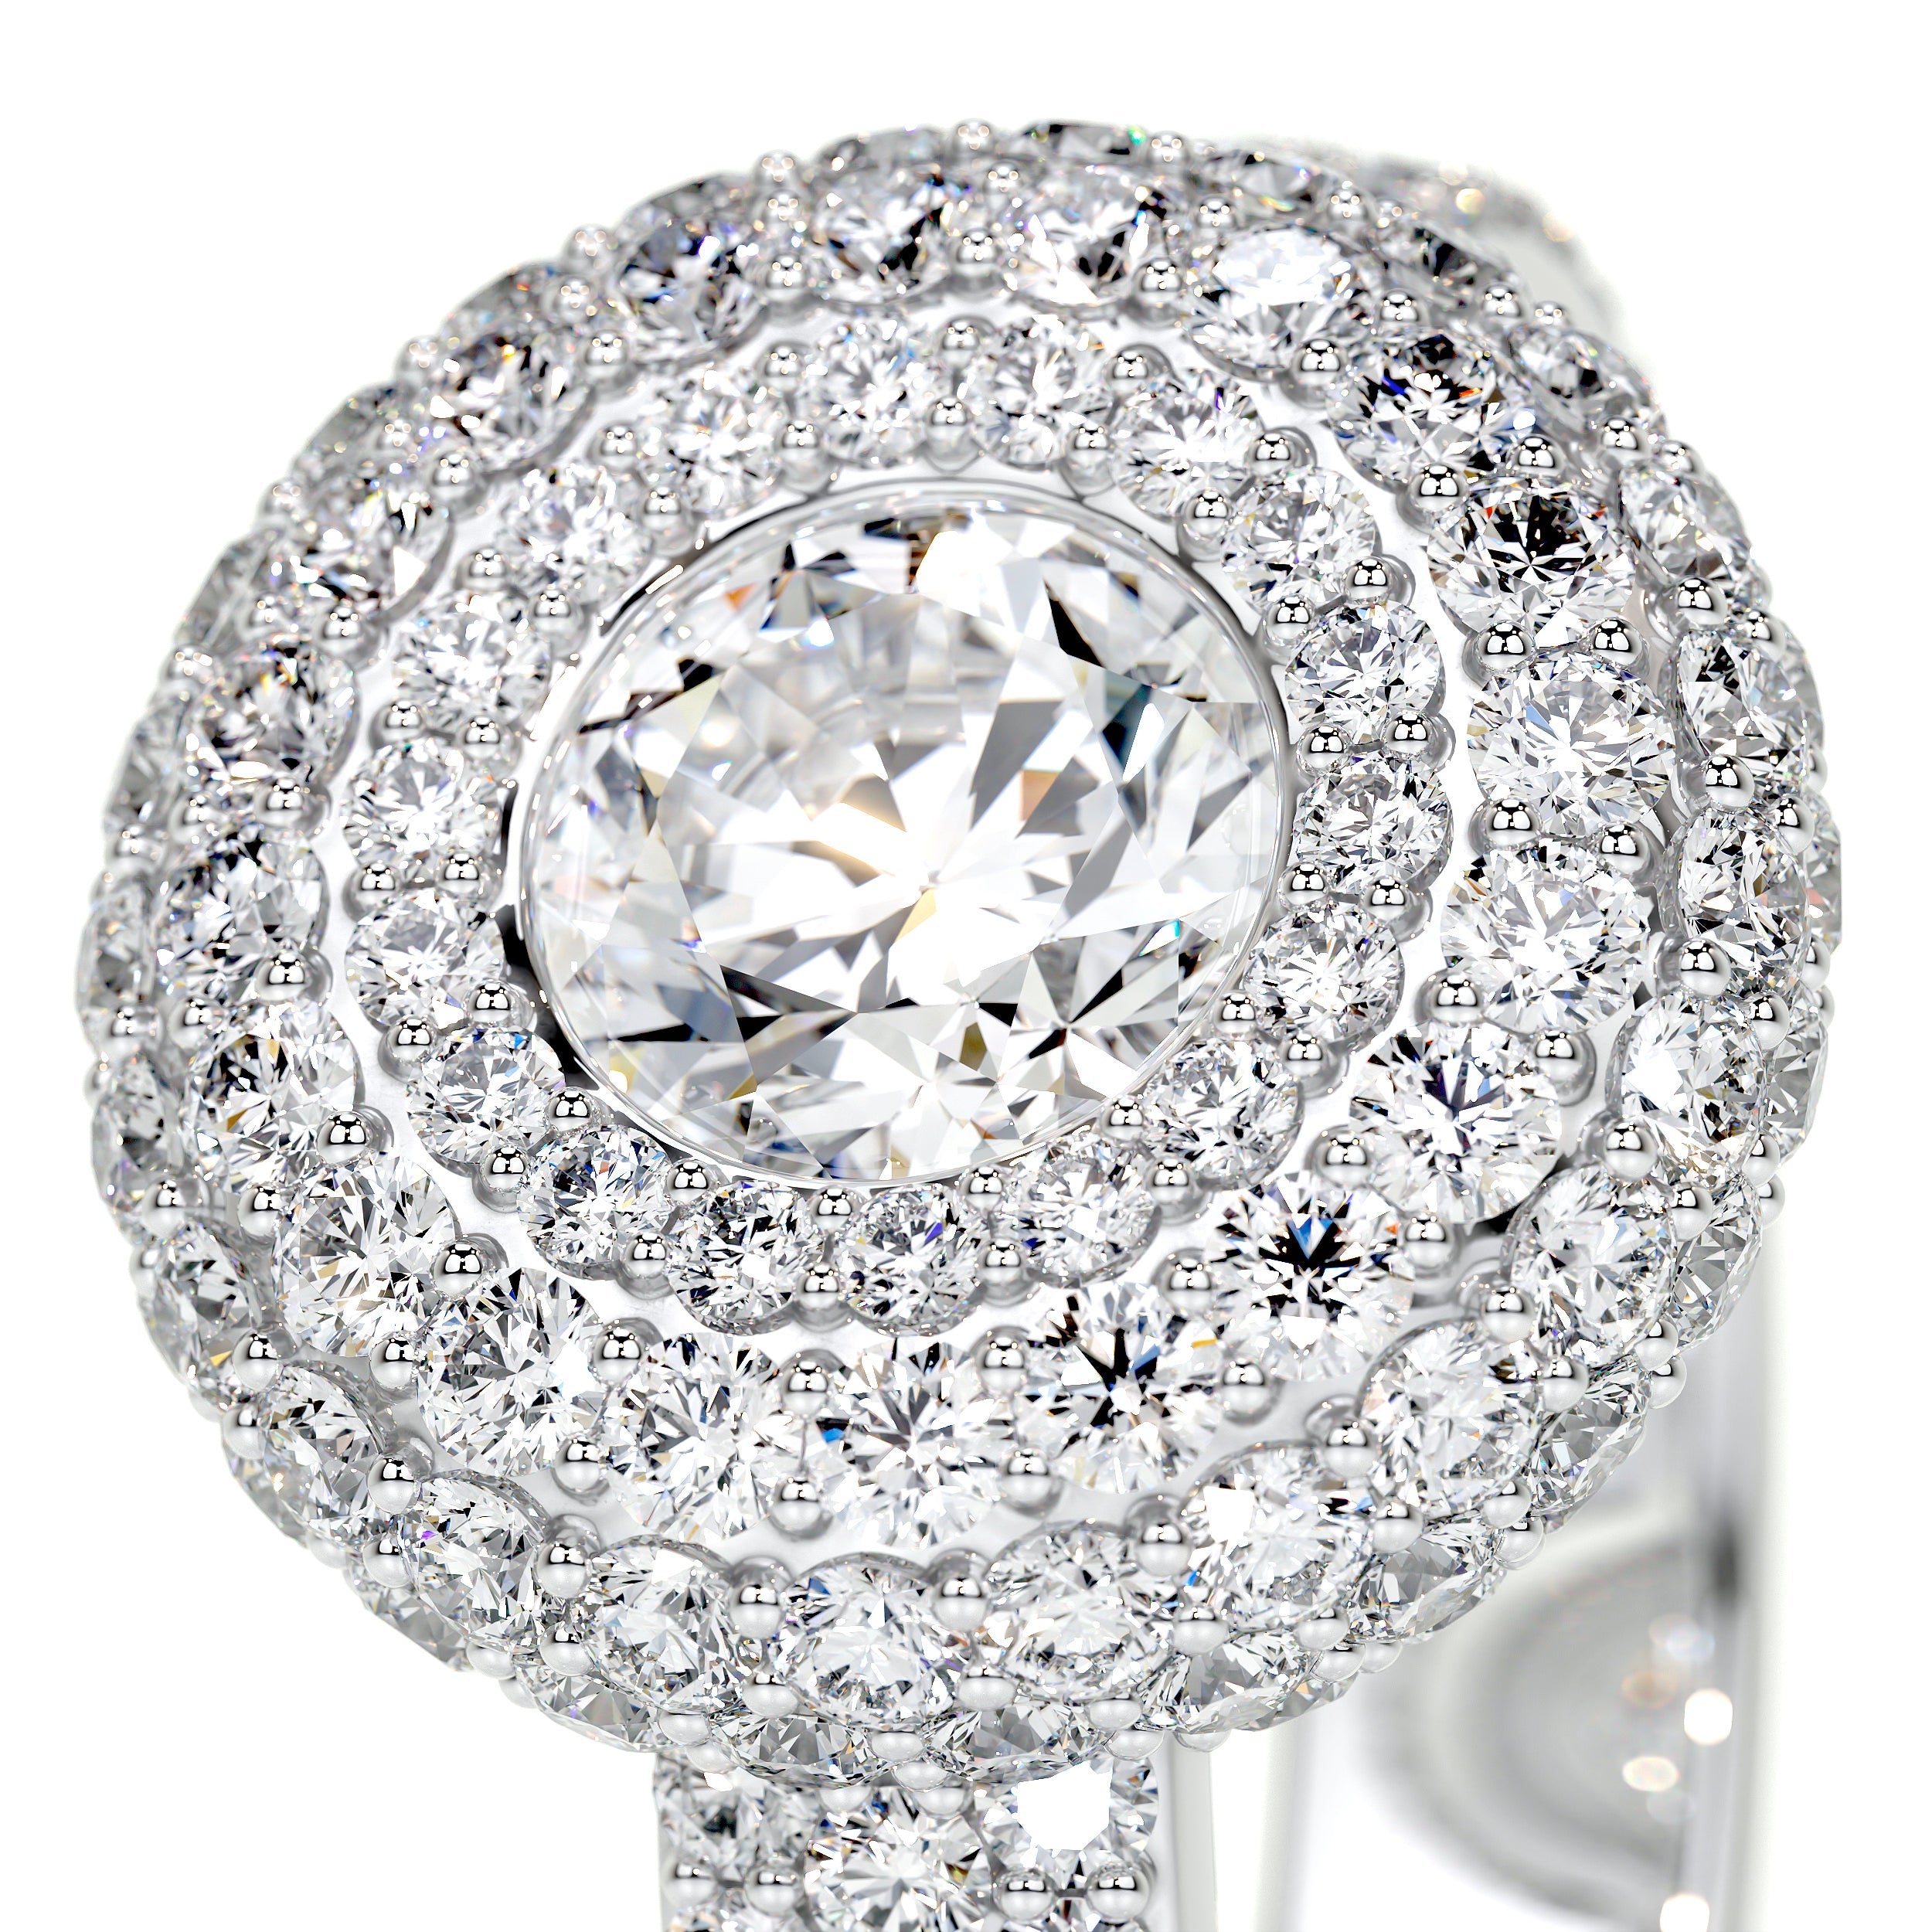 Reagan Lab Grown Diamond Ring   (2.25 Carat) -14K White Gold